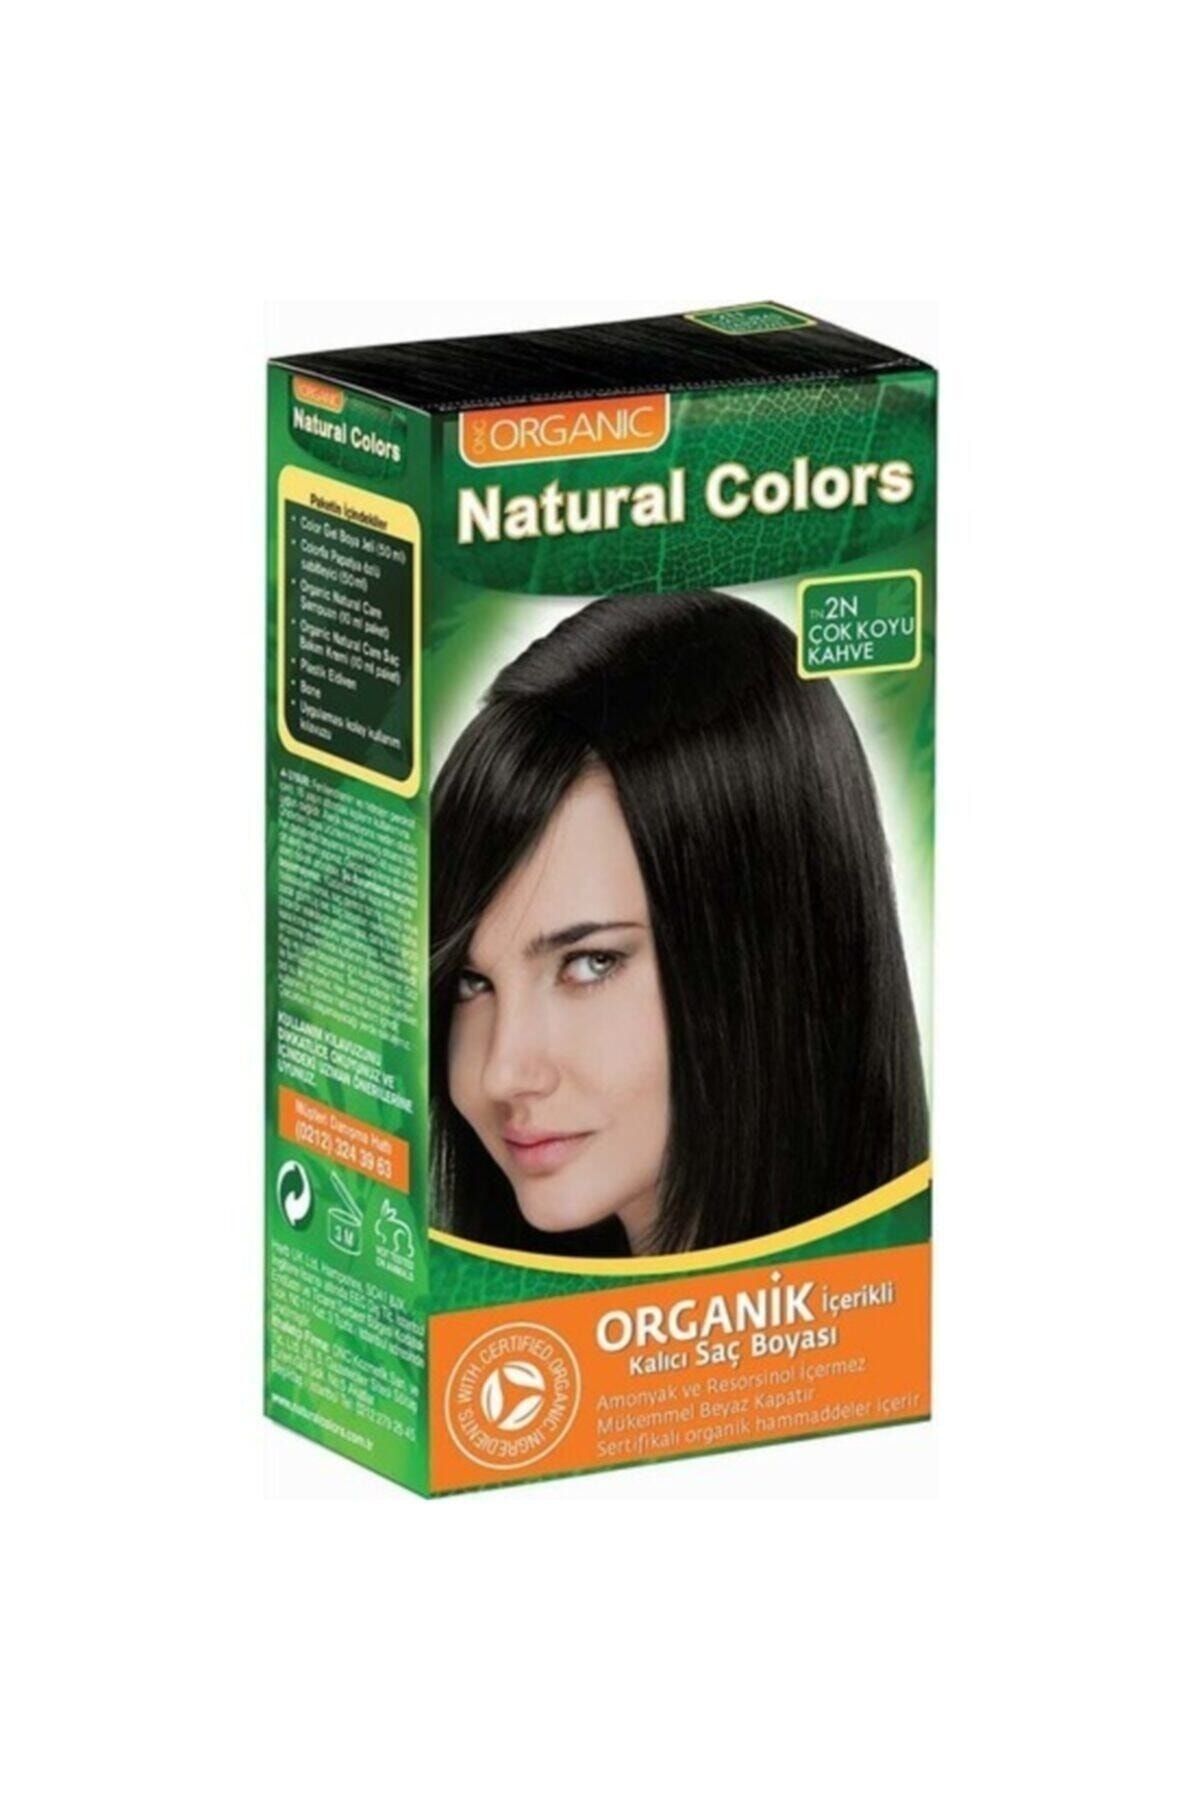 Organic Natural Colors Natural Colors 2n Koyu Kahve Saç Boyası 50 ml